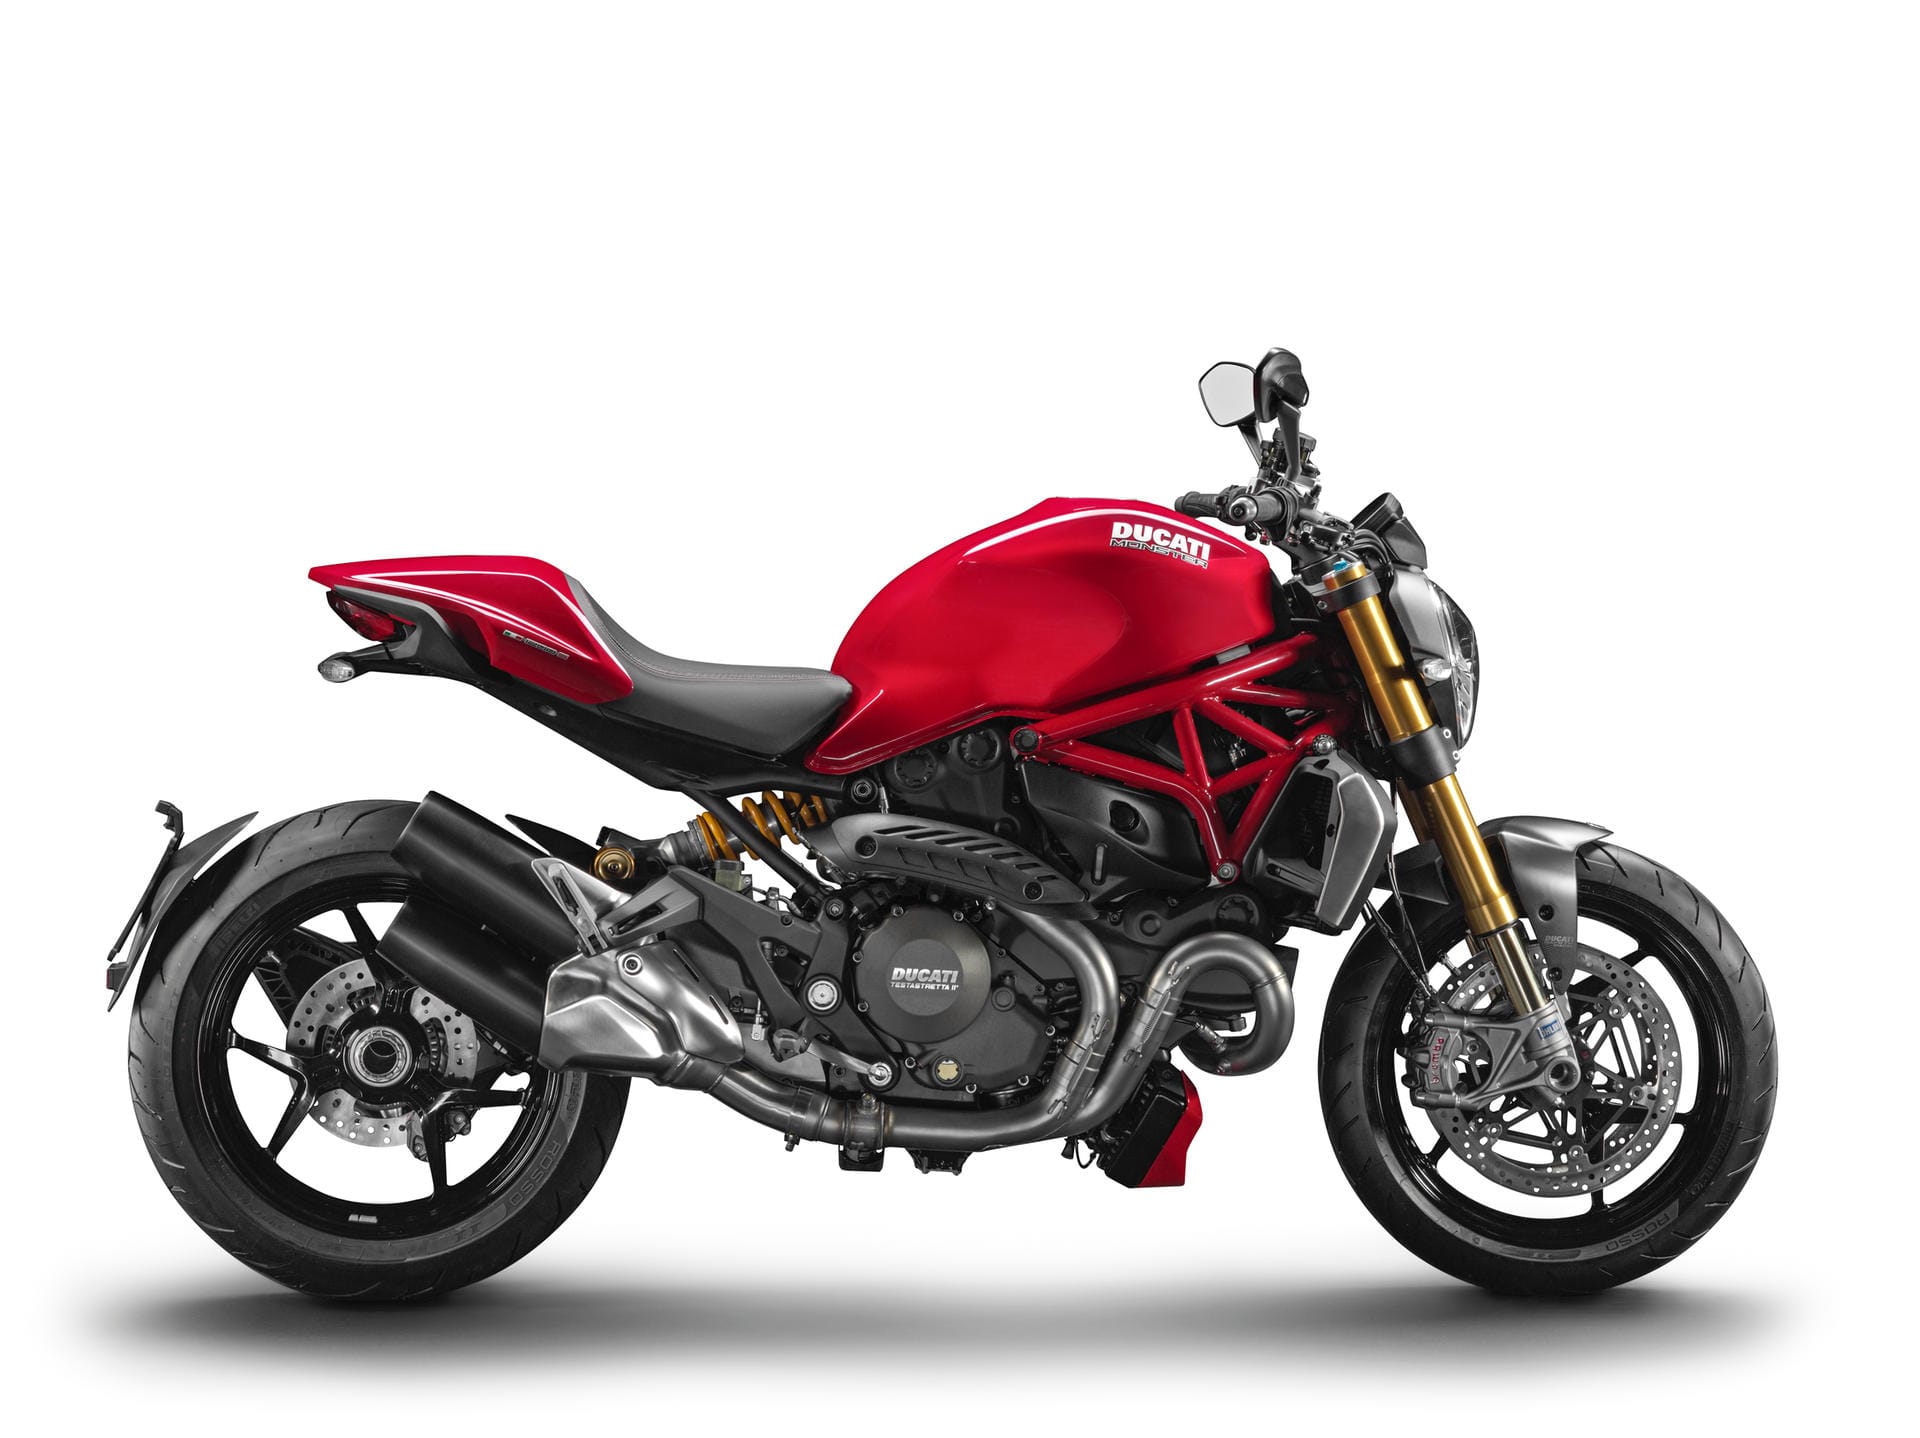 Nackte Tatsachen: Ein typisches, unverkleidetes Naked-Bike ist die Ducati Monster.